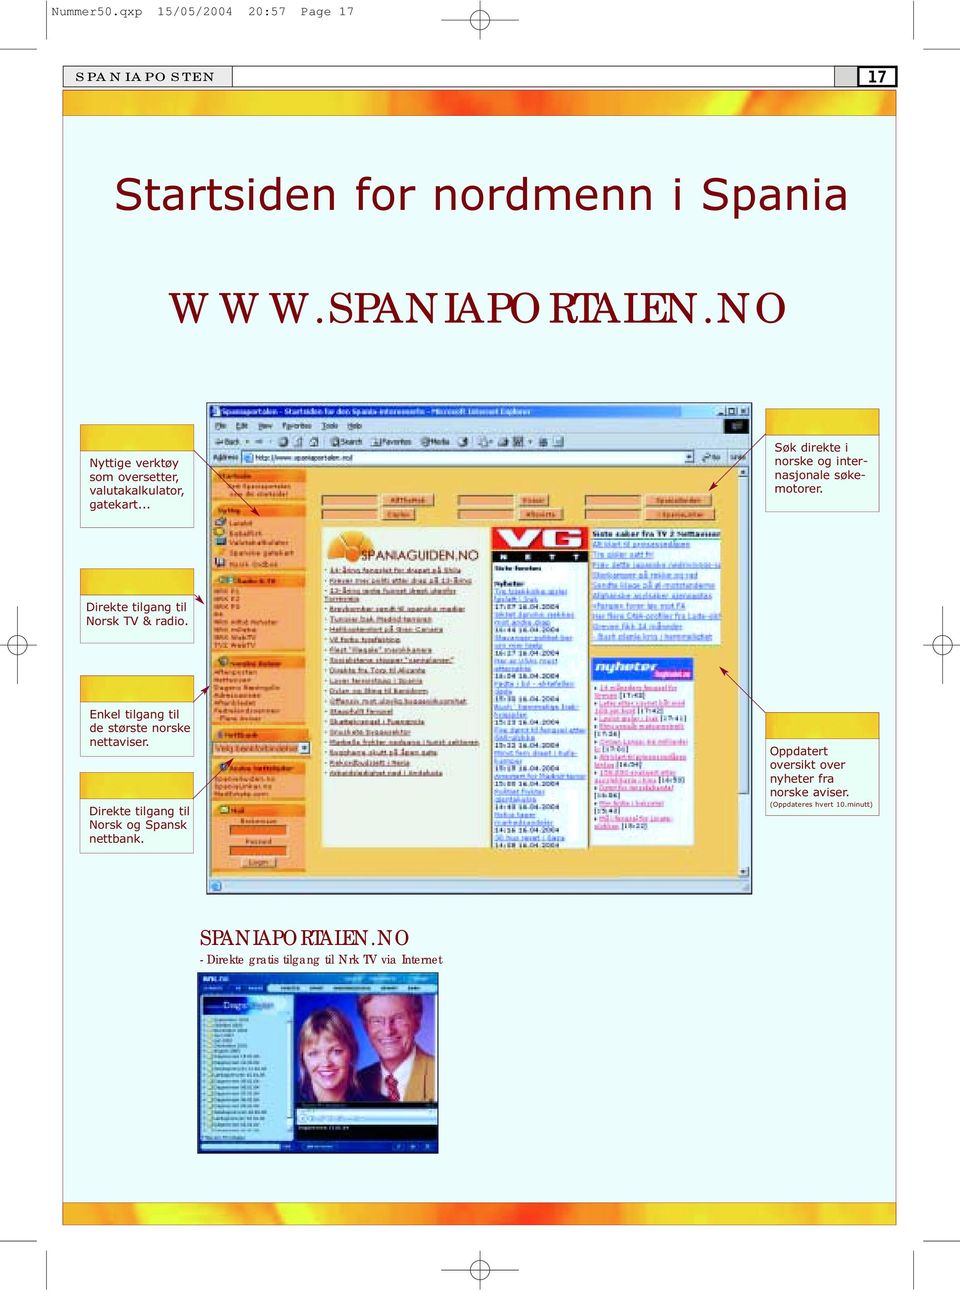 Direkte tilgang til Norsk TV & radio Enkel tilgang til de største norske nettaviser Direkte tilgang til Norsk og Spansk